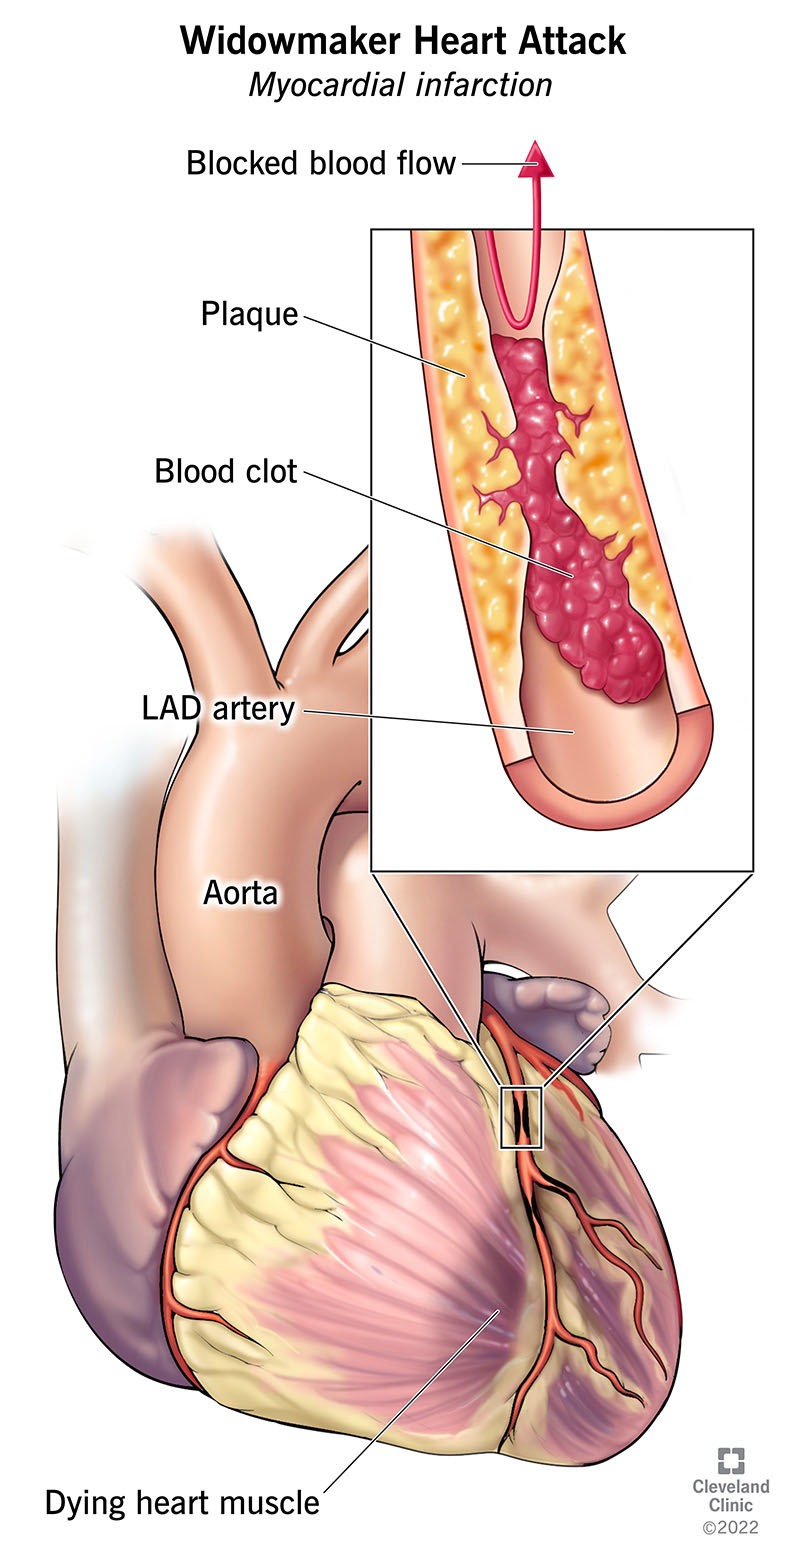 Un attacco cardiaco da vedovo coinvolge l'arteria discendente anteriore sinistra, che fornisce la maggior parte del muscolo cardiaco.